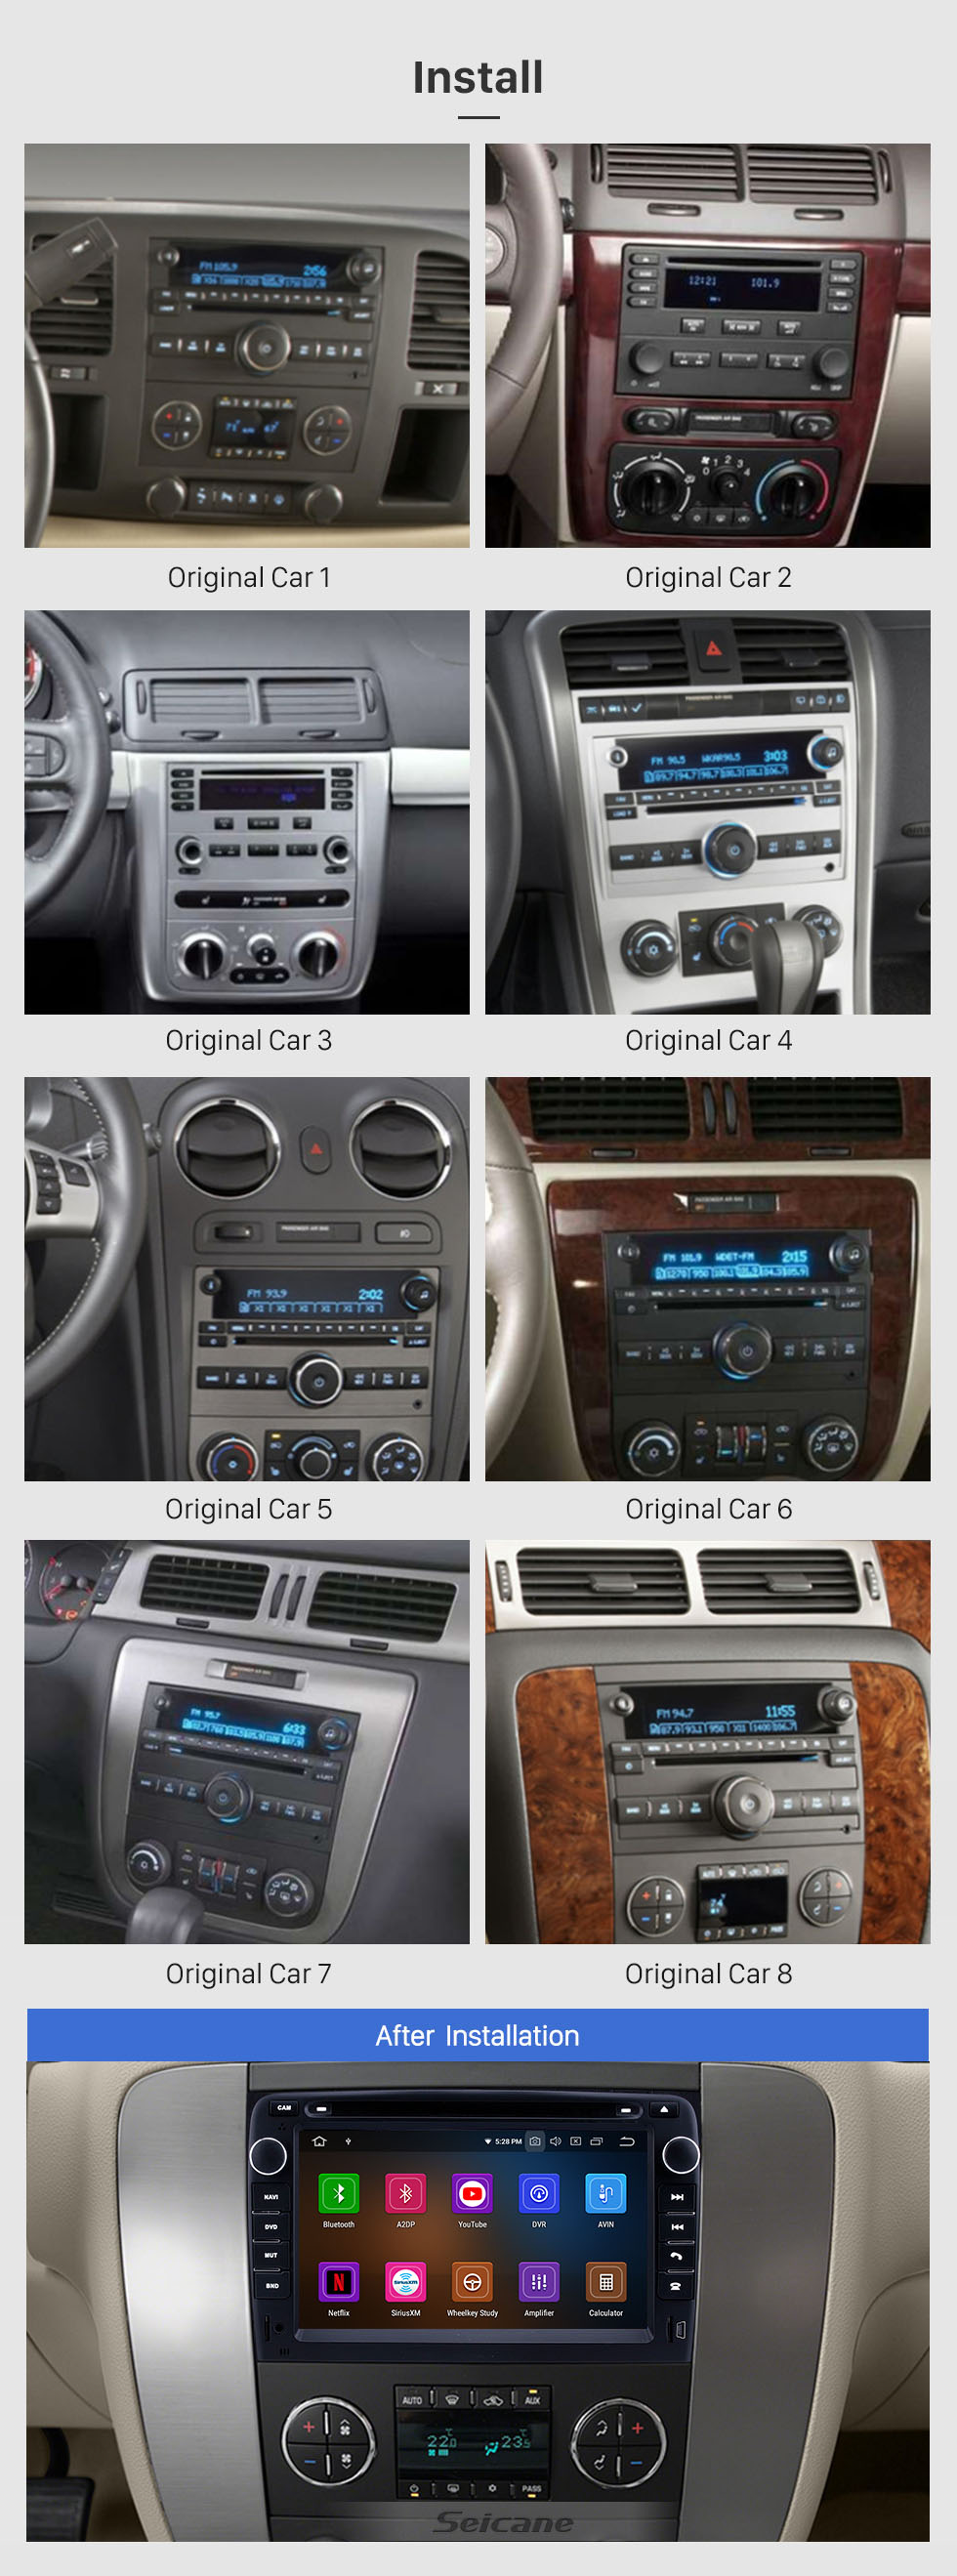 Seicane 7 pulgadas Android 11.0 Aftermarket Radio HD Unidad principal de pantalla táctil para 2007-2012 General GMC Yukon Chevy Chevrolet Tahoe Buick Enclave Hummer H2 Sistema de navegación GPS estéreo para automóvil Teléfono Bluetooth Soporte WIFI OBDII DVR USB 